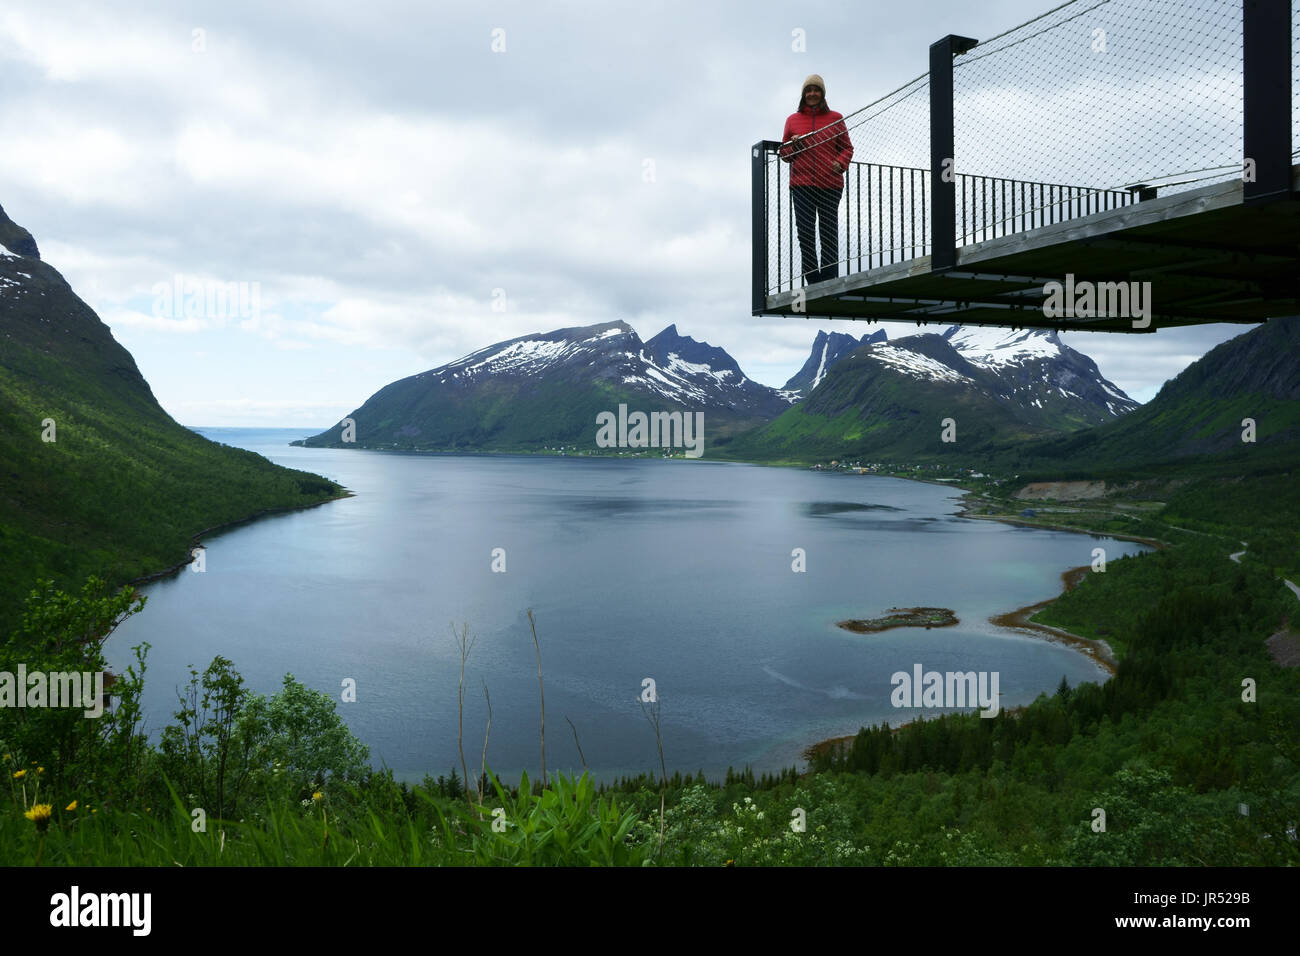 Woman on viewing platform Bergsbotn overlooking Bergsfjord, island Senja, Troms, Norway Stock Photo